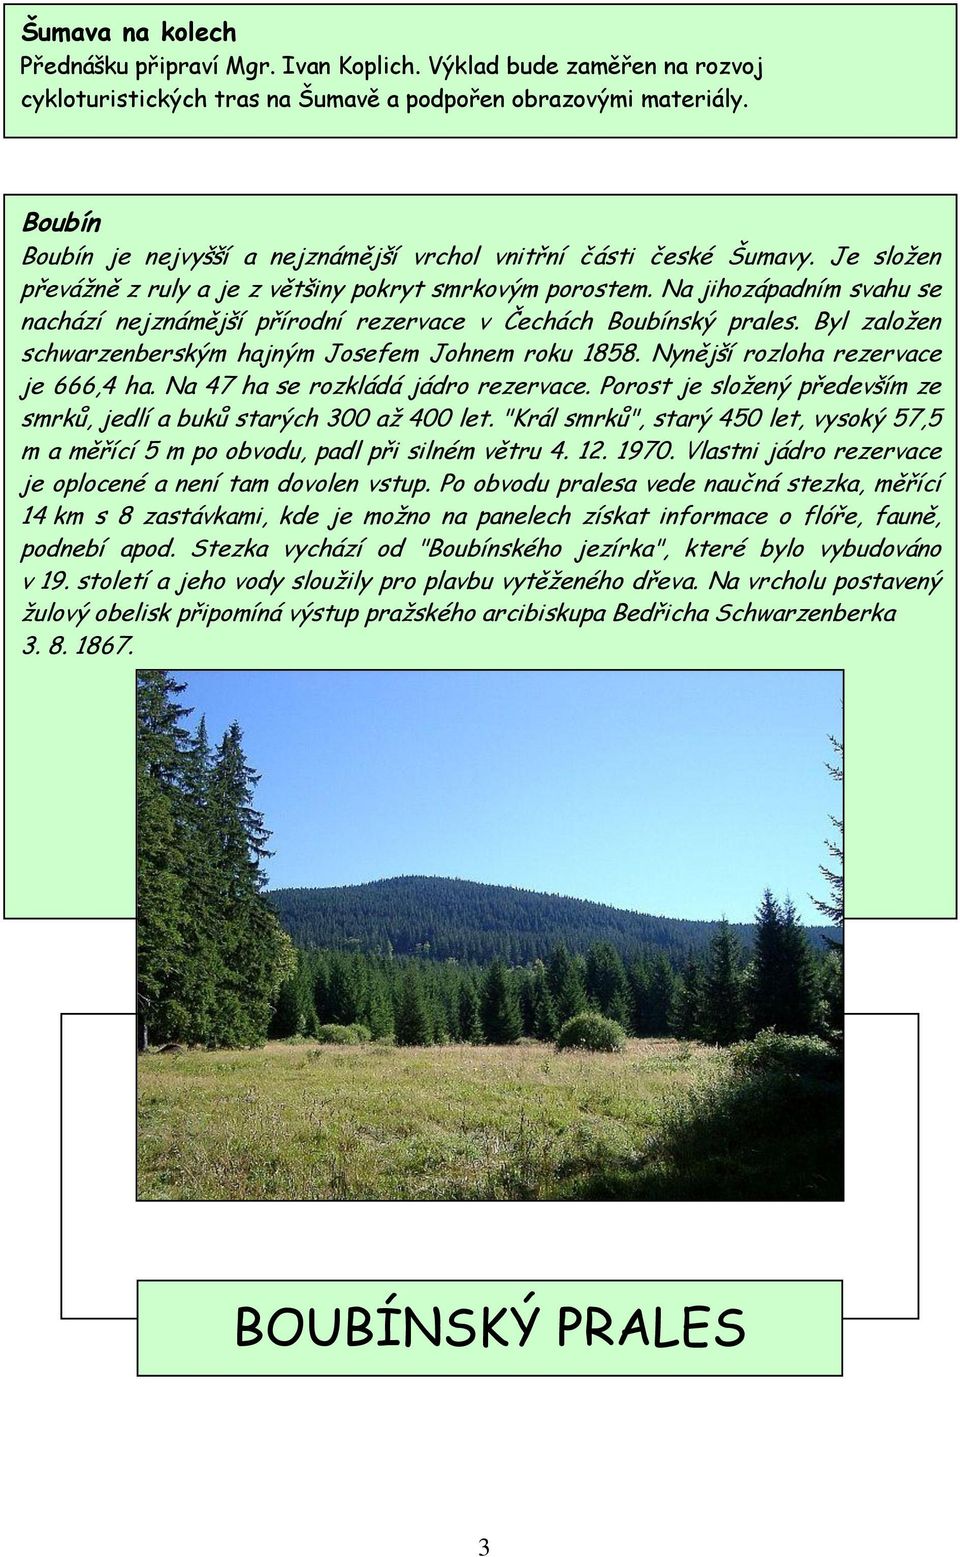 Na jihozápadním svahu se nachází nejznámější přírodní rezervace v Čechách Boubínský prales. Byl zaloţen schwarzenberským hajným Josefem Johnem roku 1858. Nynější rozloha rezervace je 666,4 ha.